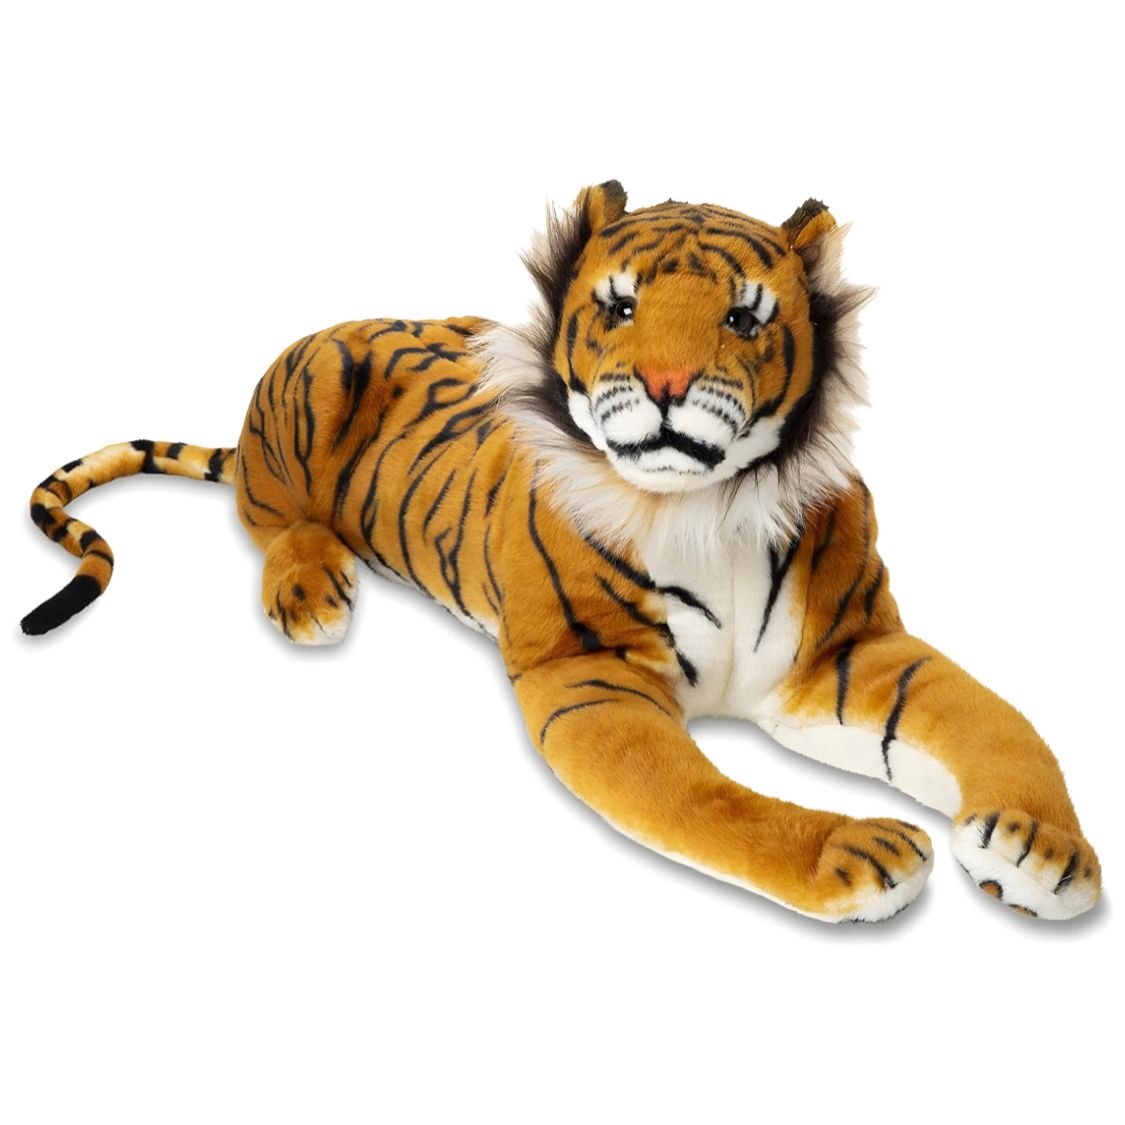 Tiger Stuffed Toy Rental